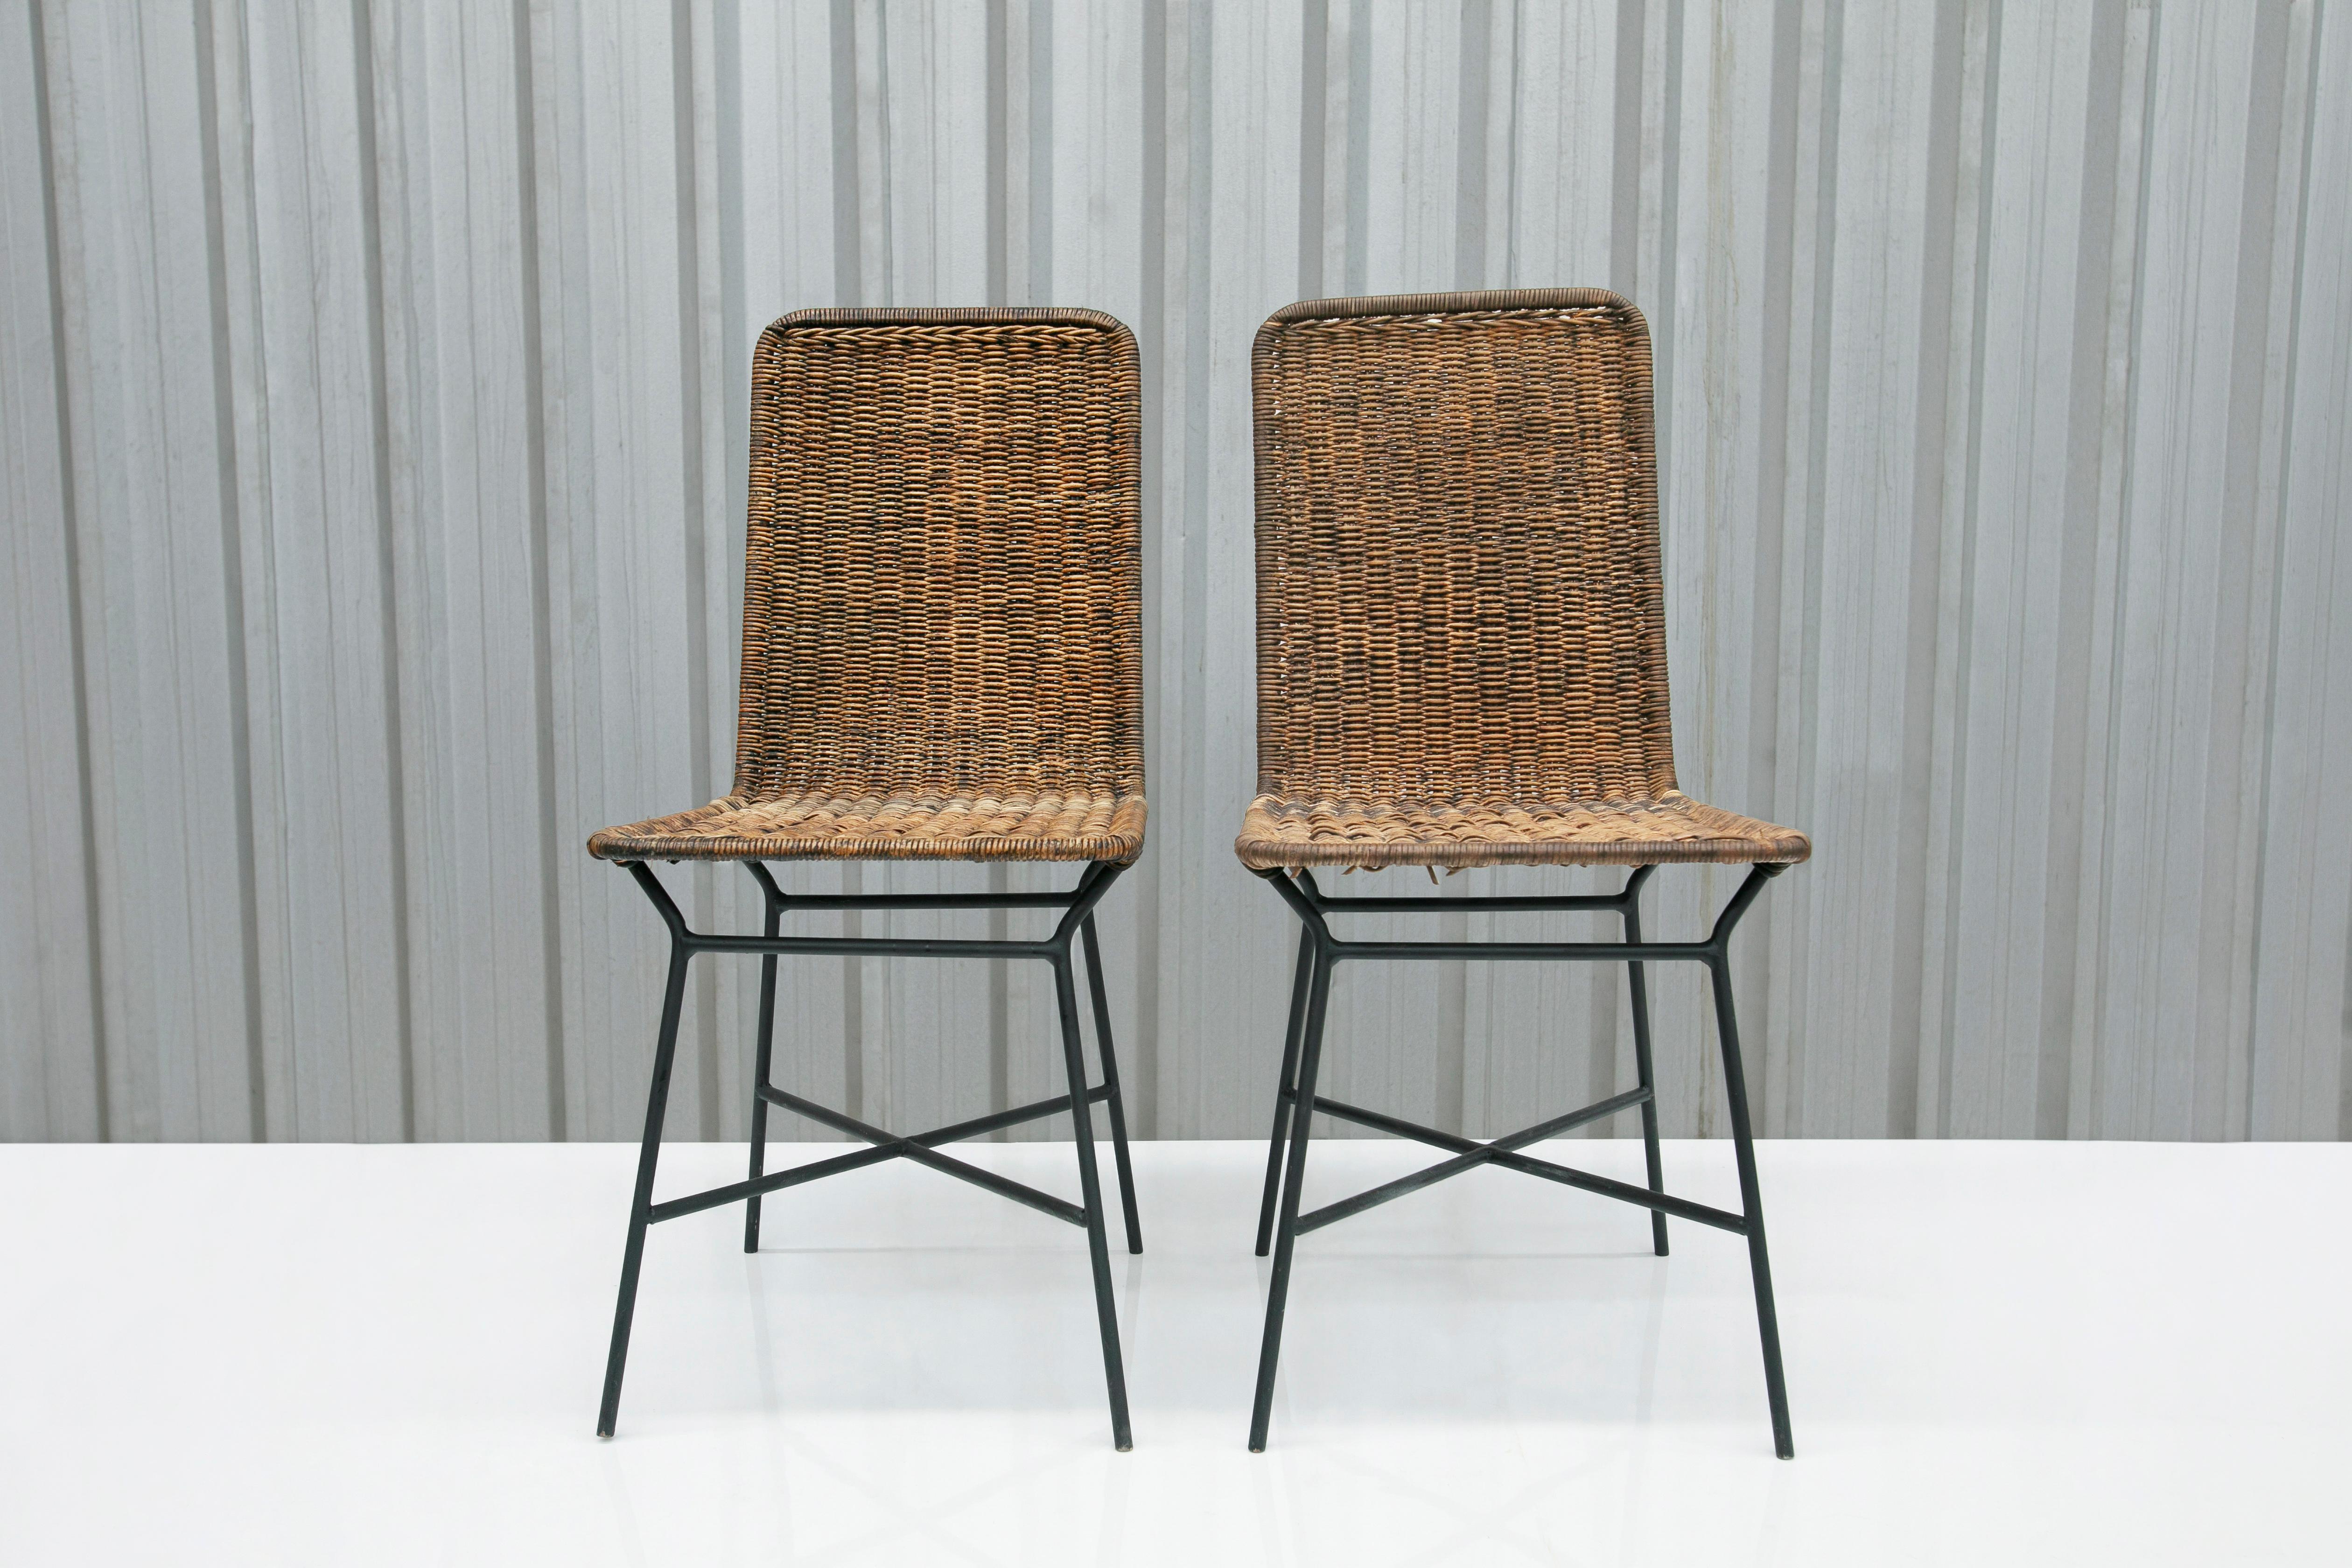 Diese von Carlo Hauner in den fünfziger Jahren entworfenen Mid Century Modern Stühle aus Caning und Metall sind heute noch erhältlich!!

Die Stühle haben eine schwarz lackierte Eisenstruktur, die mit Caning überzogen ist. Im Anhang finden Sie ein